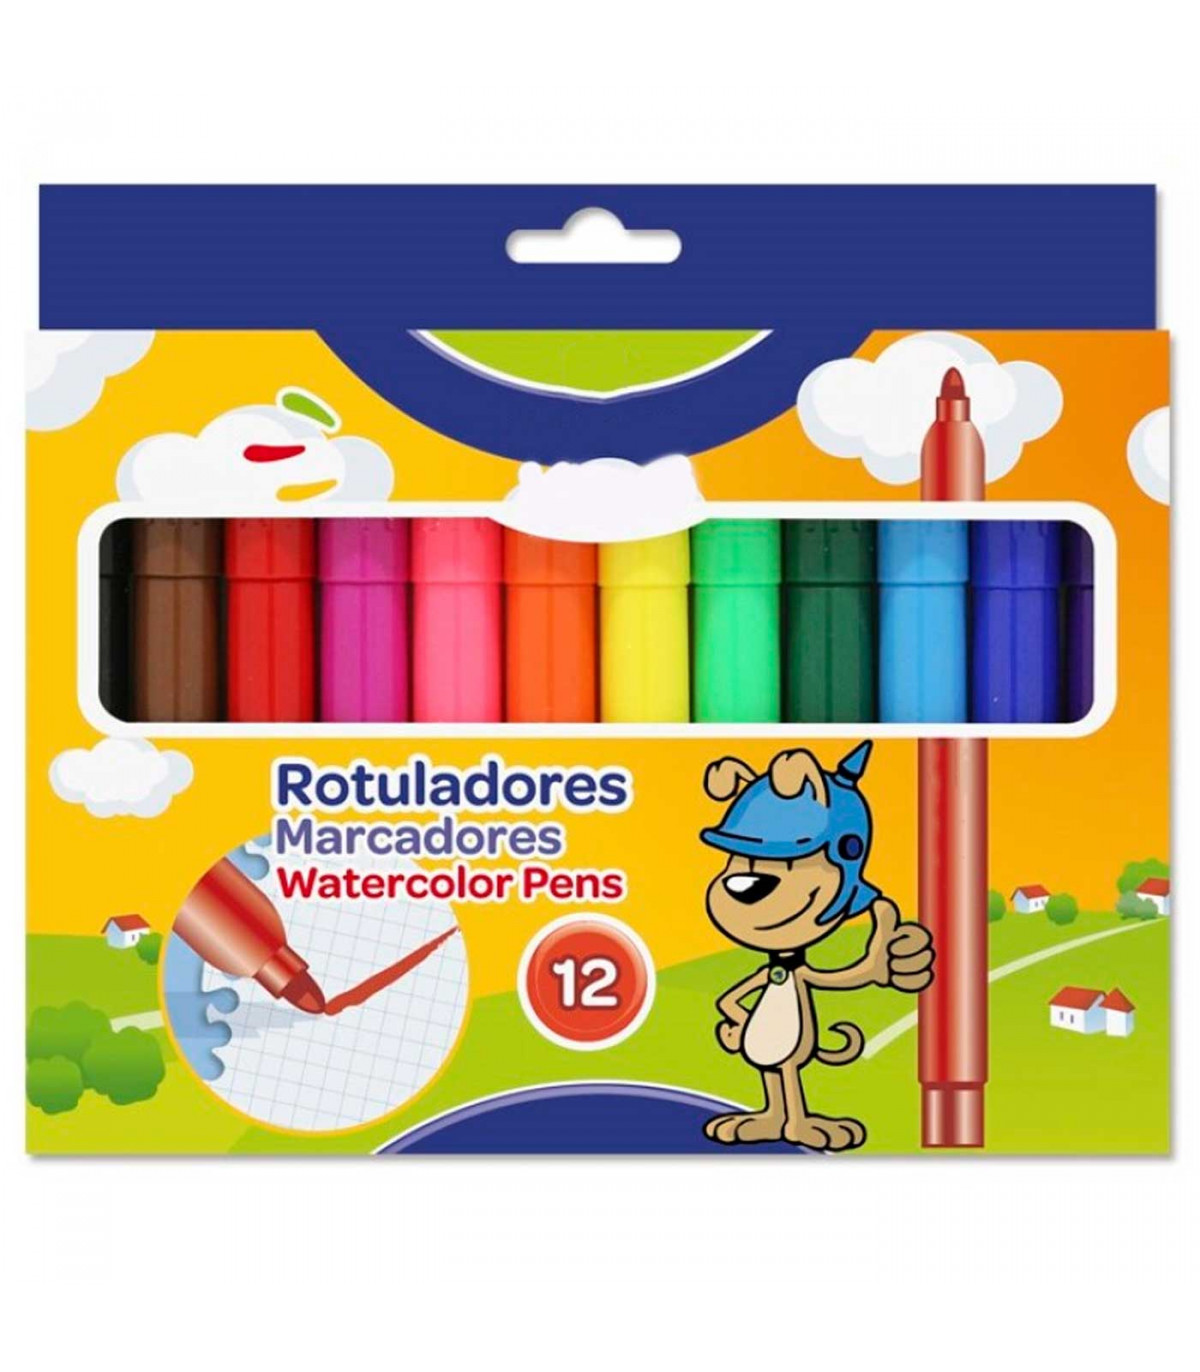 https://tradineur.com/62699-superlarge_default/tradineur--caja-de-12-rotuladores-gruesos-de-colores-para-ninos-marcadores-con-punta-resistente-material-escolar-colores-vivos-s.jpg